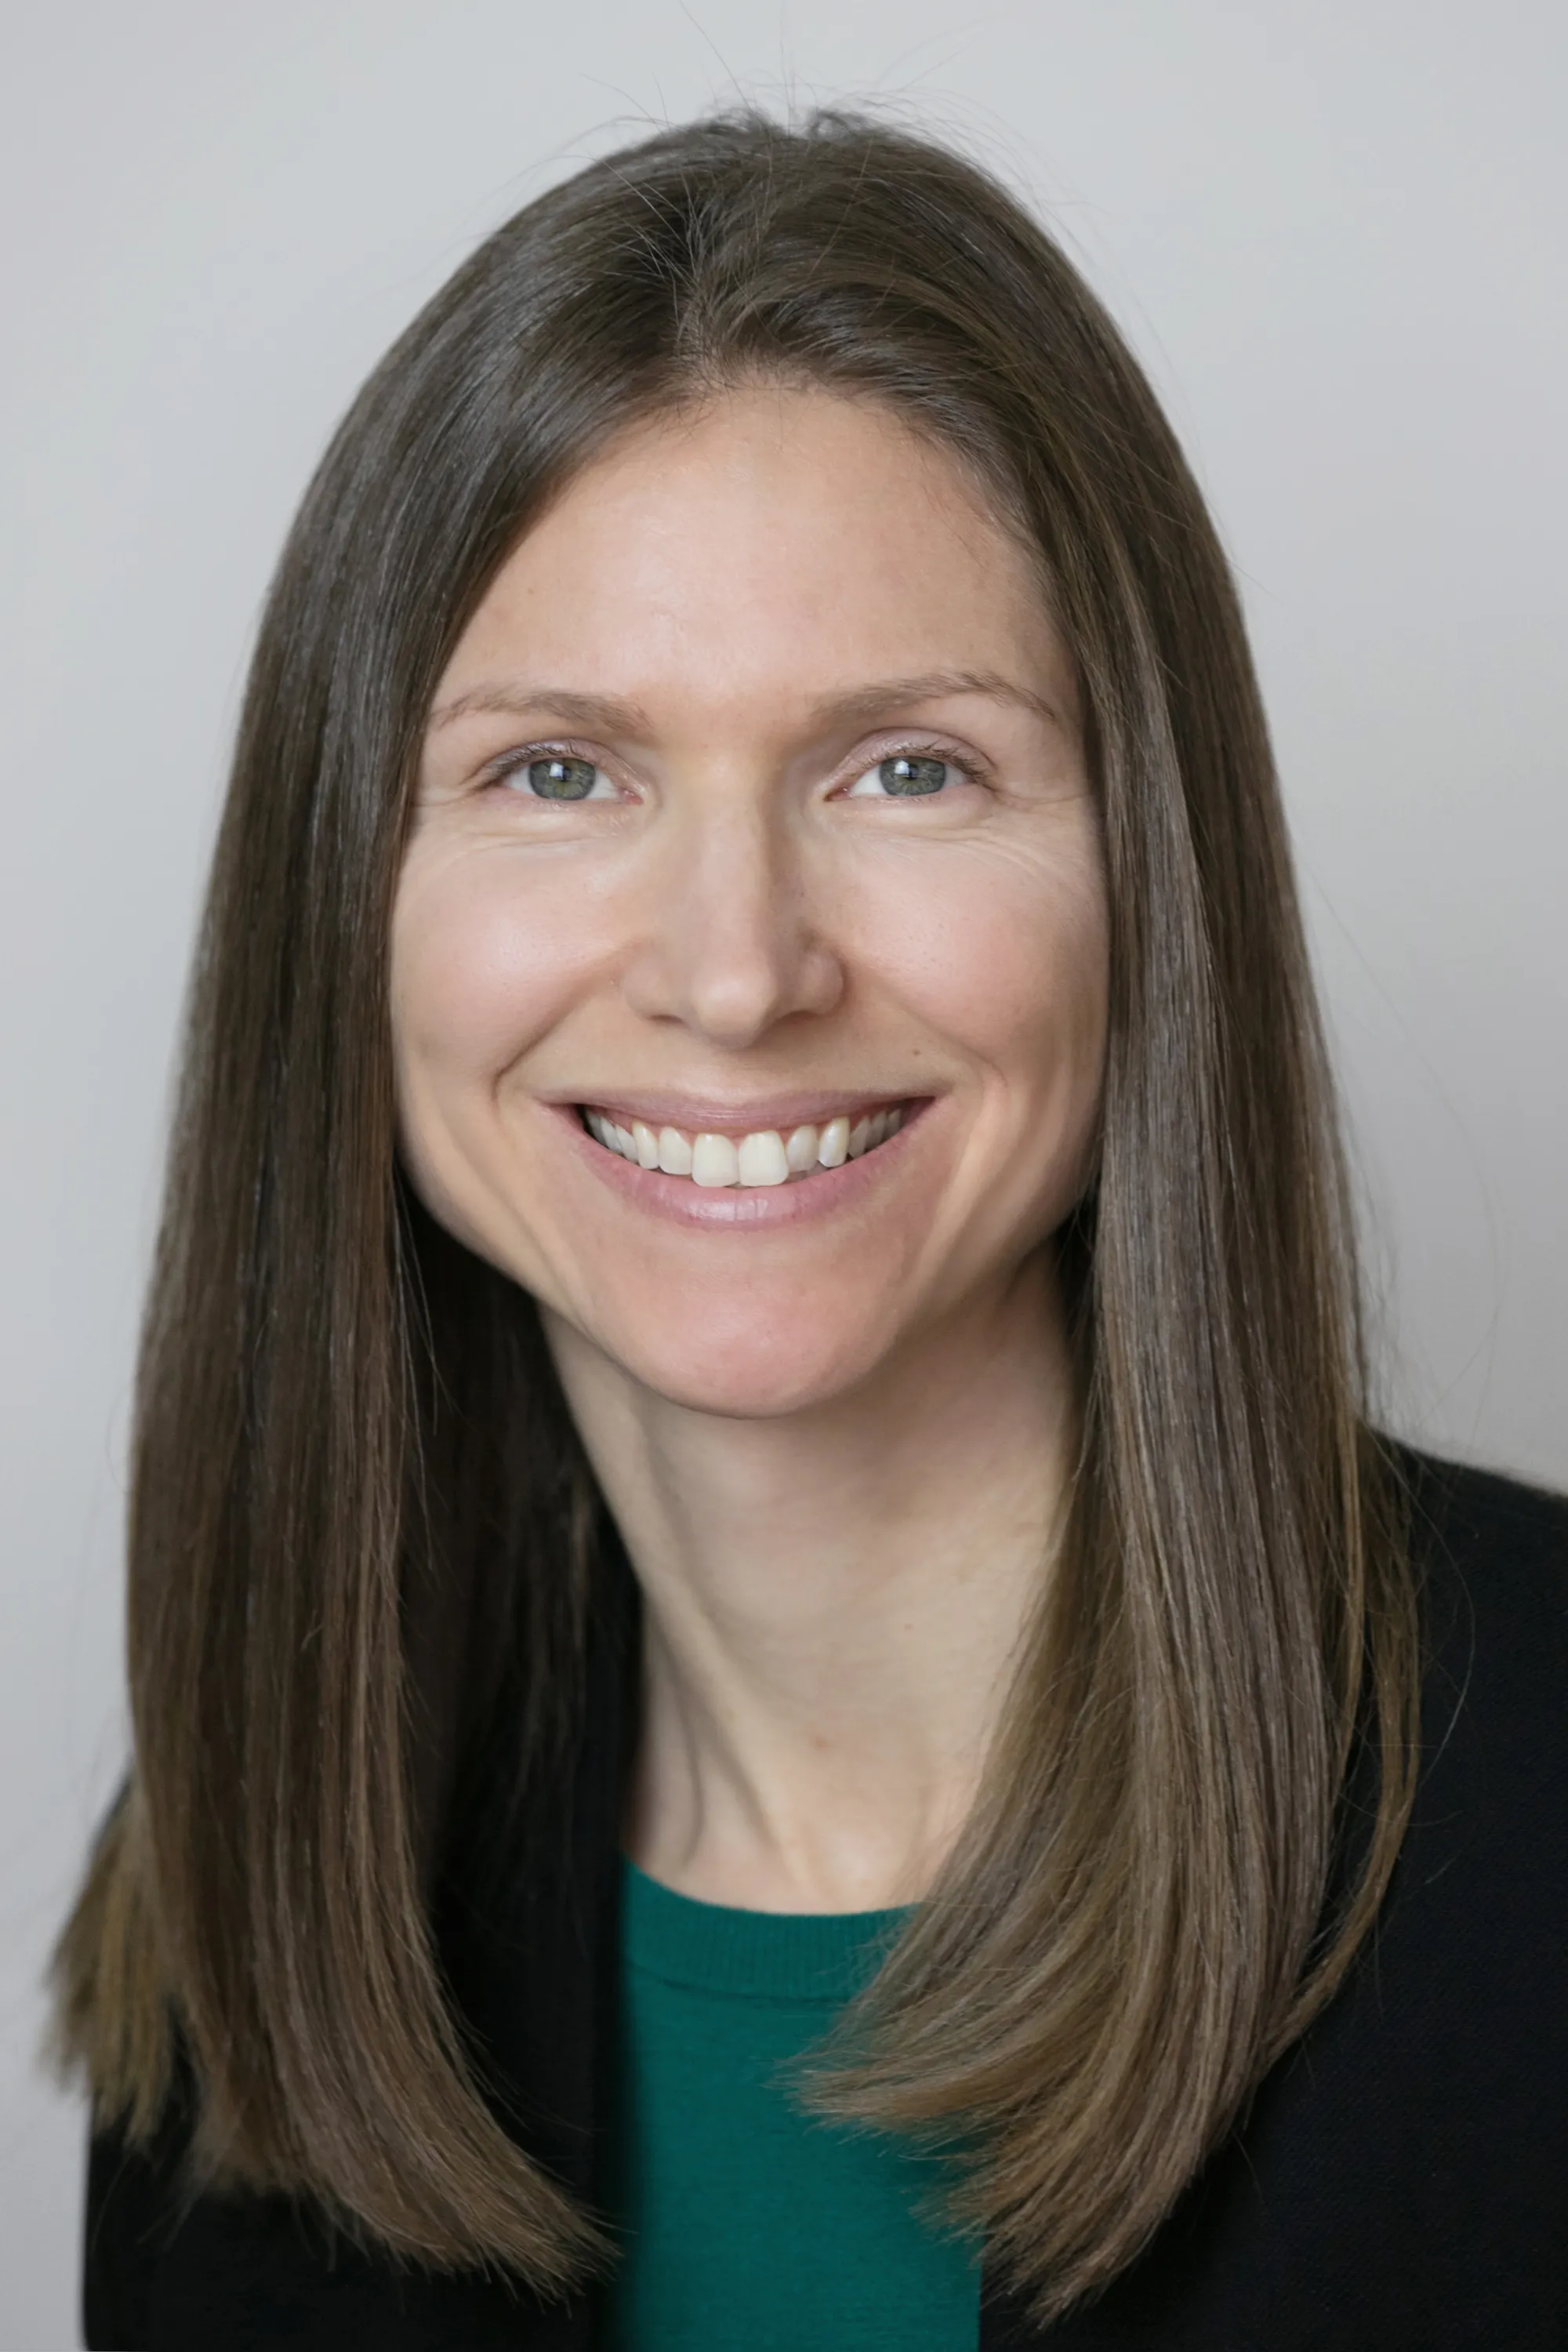 Heather S. Kapson, Ph.D